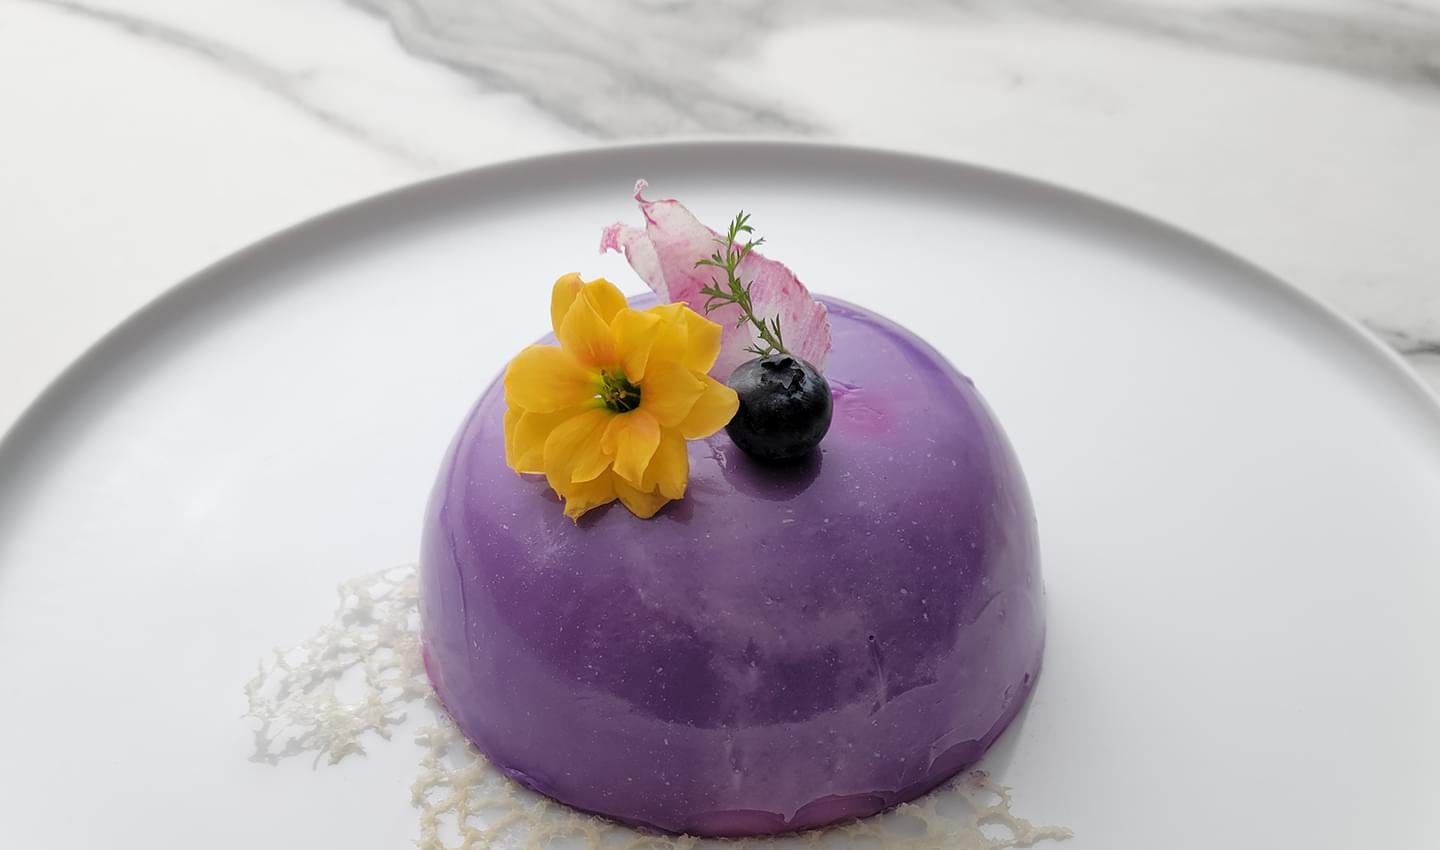 L’appareil photo fait un zoom avant sur une assiette avec dessert violet surmonté d’une fleur jaune recouverte de quadrillages, montrant comment vous pouvez obtenir des images haute résolution même en les rognant.